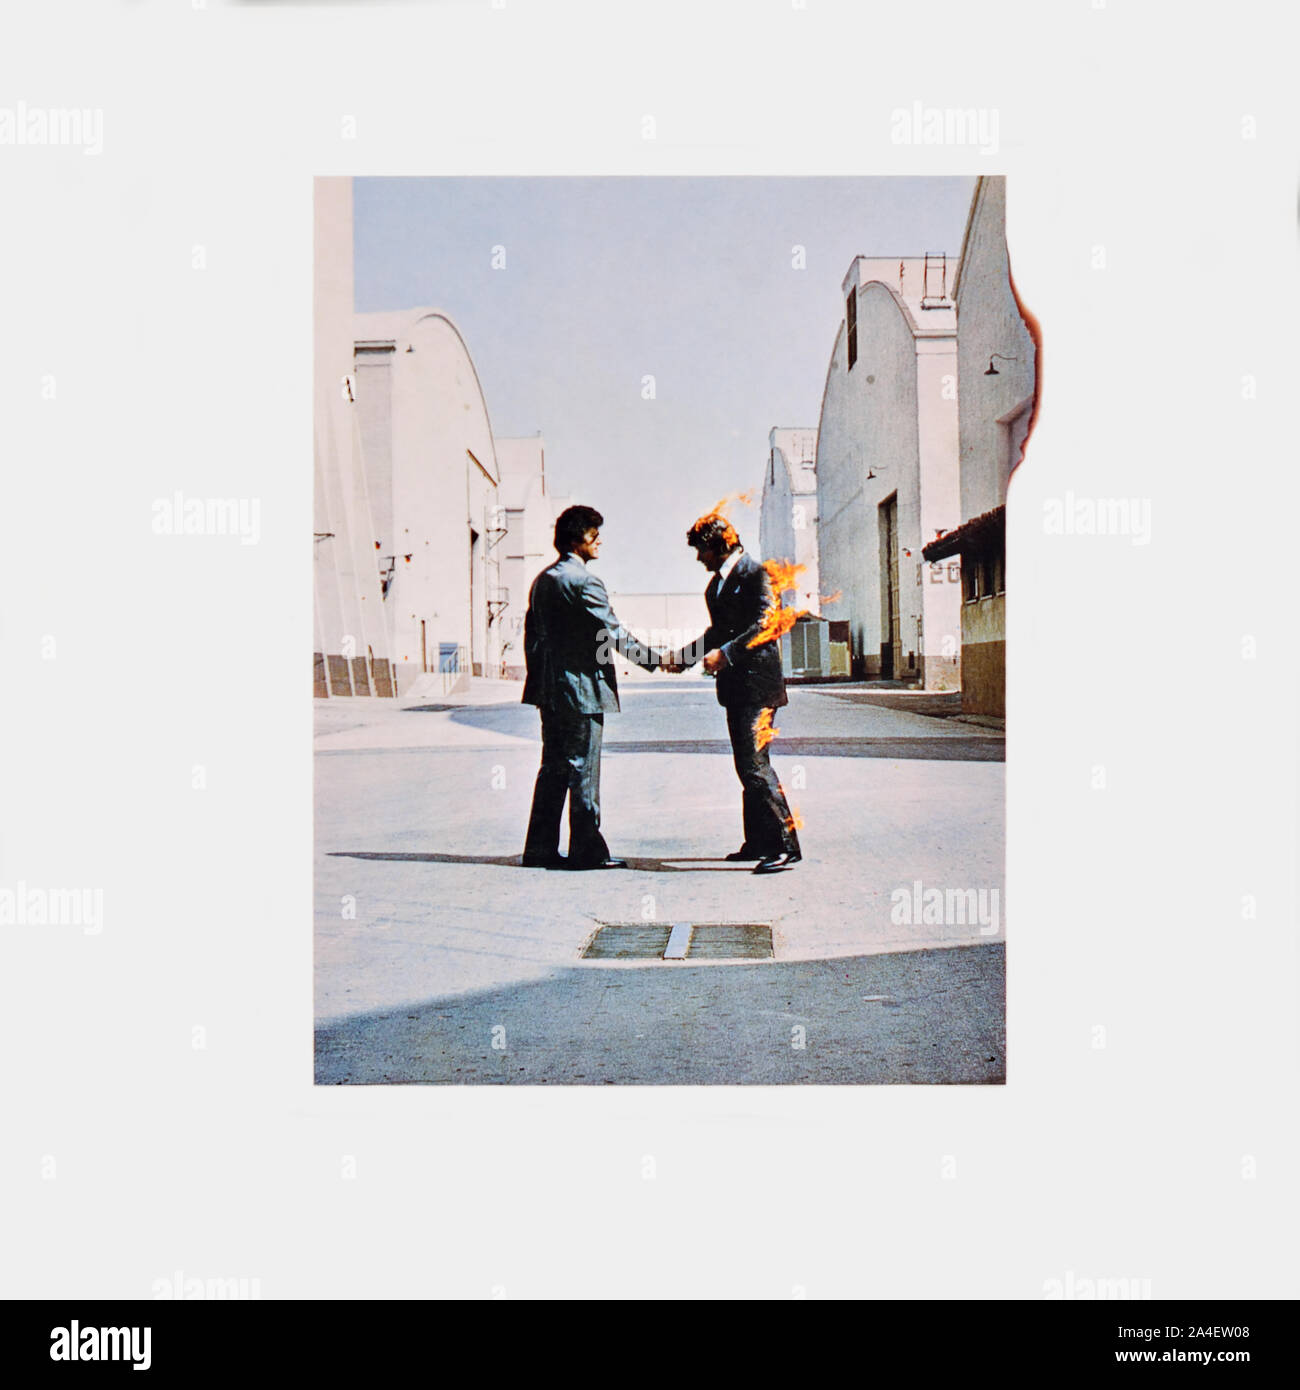 Pink Floyd - couverture originale de l'album en vinyle - Wish you here - 1975 Banque D'Images